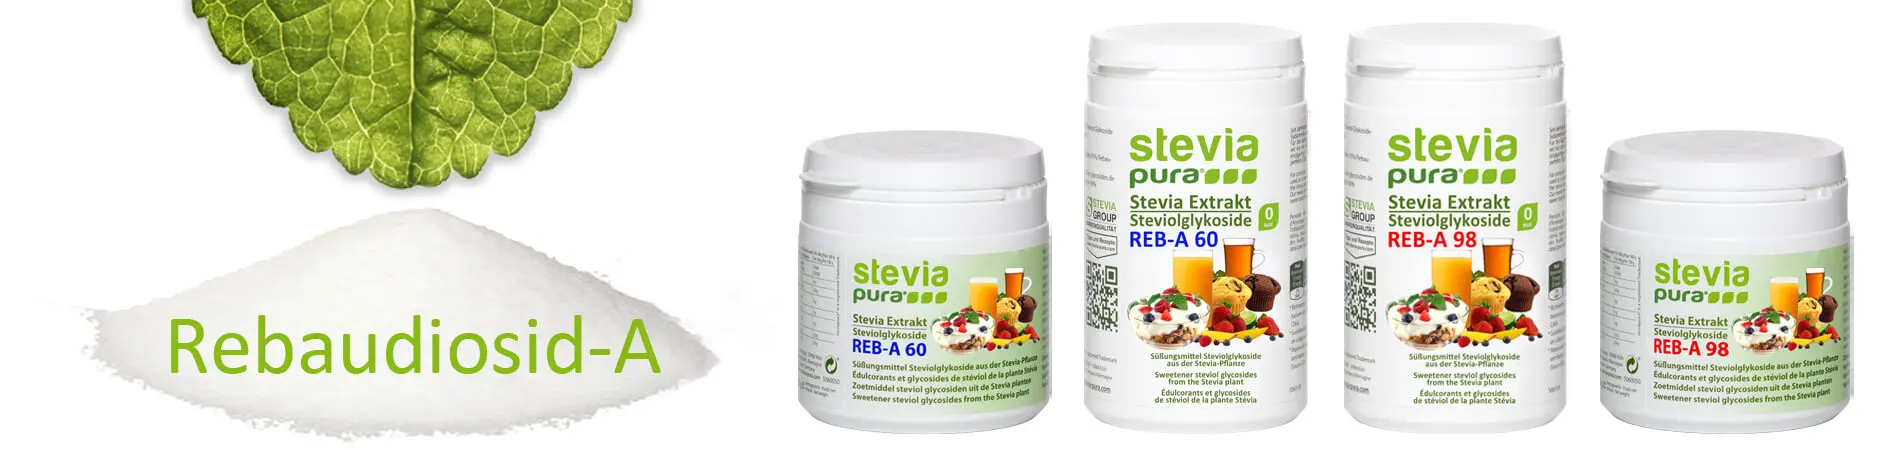 Rebaudioside-A: Glicosidi steviolici puri in polvere della Stevia